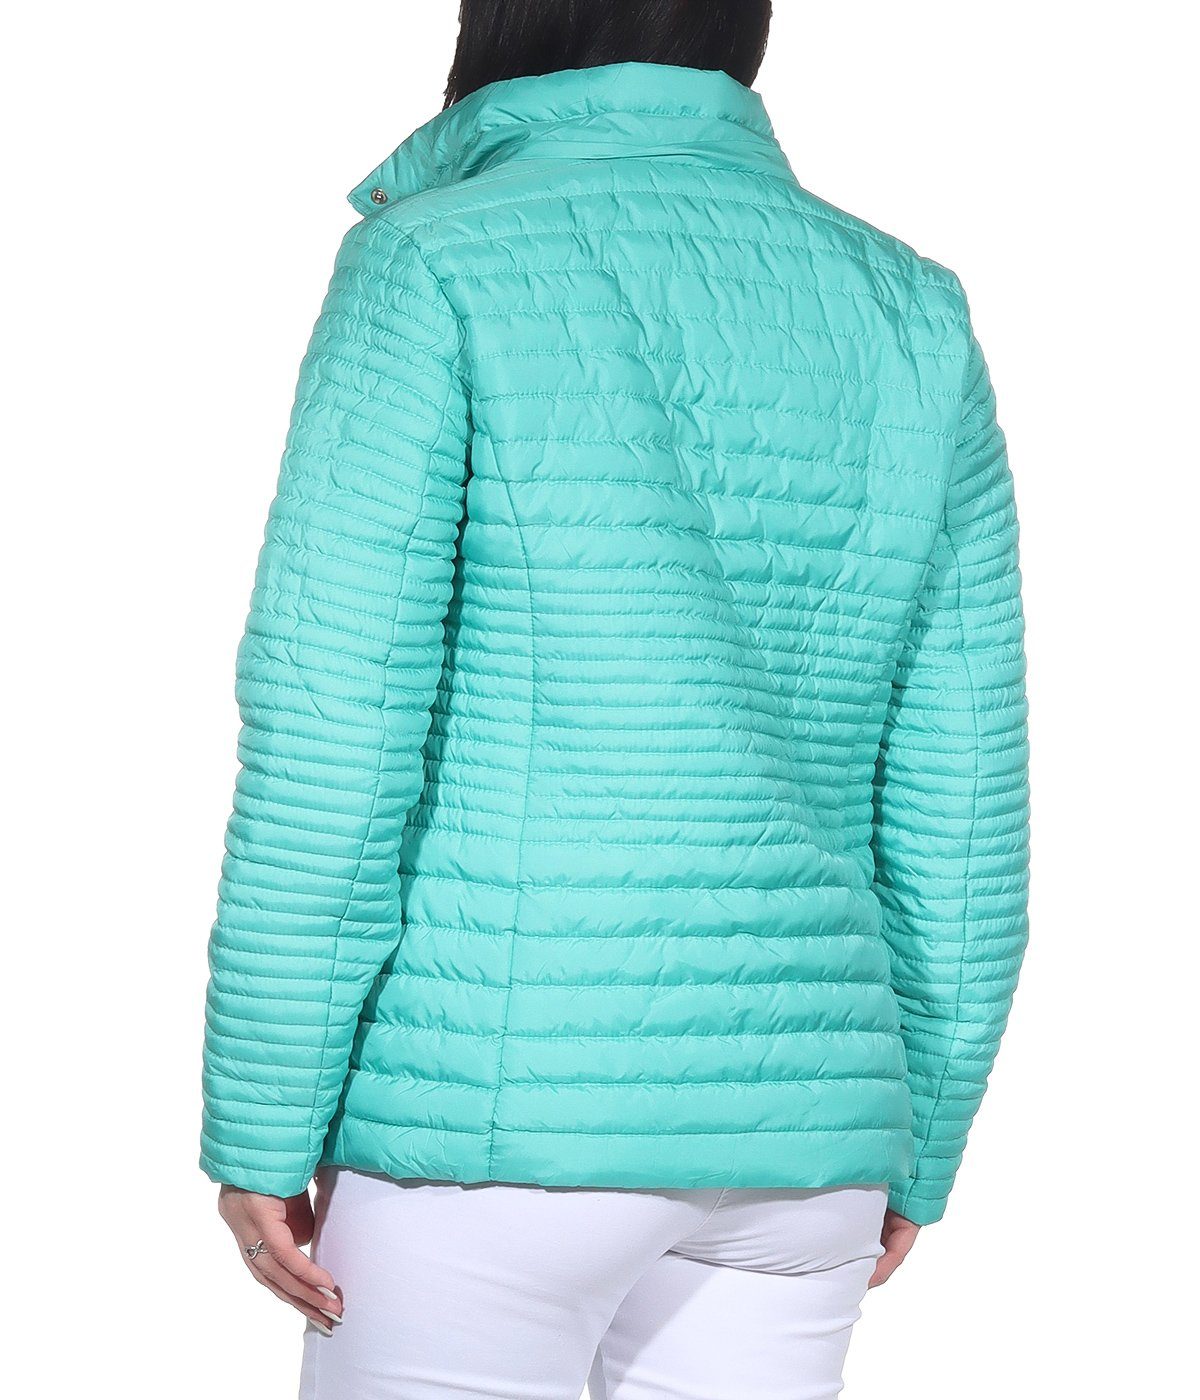 erhältlich, angenehm in leichte Aurela Damenmode auch Outdoor großen Übegrangsjacke Mint leichte Damen Größen Sommerjacke Steppjacke Jacke